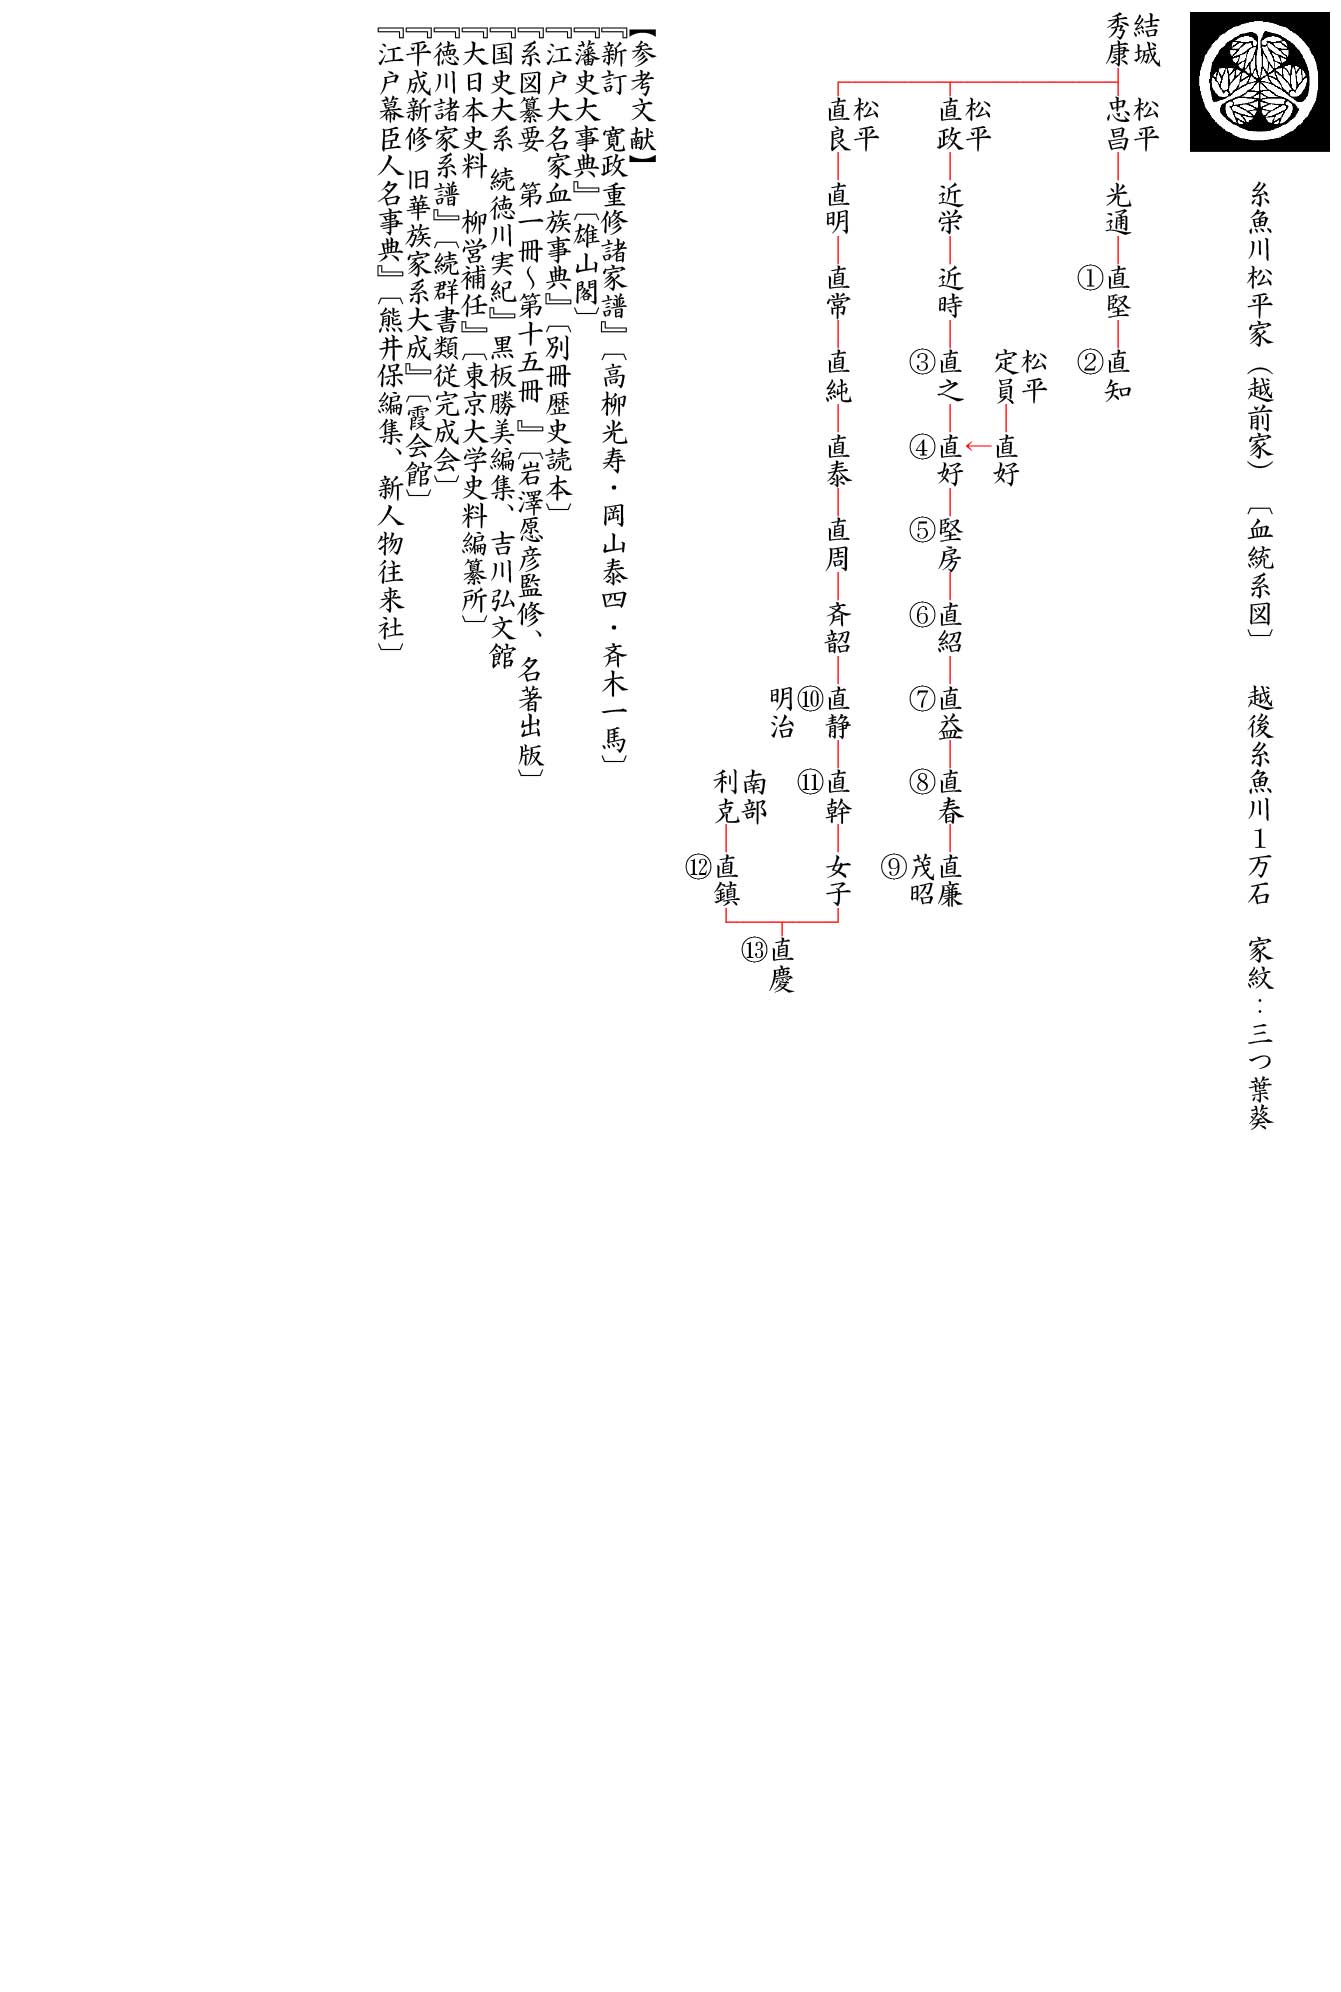 〔血統系図〕 糸魚川松平家（越前家）